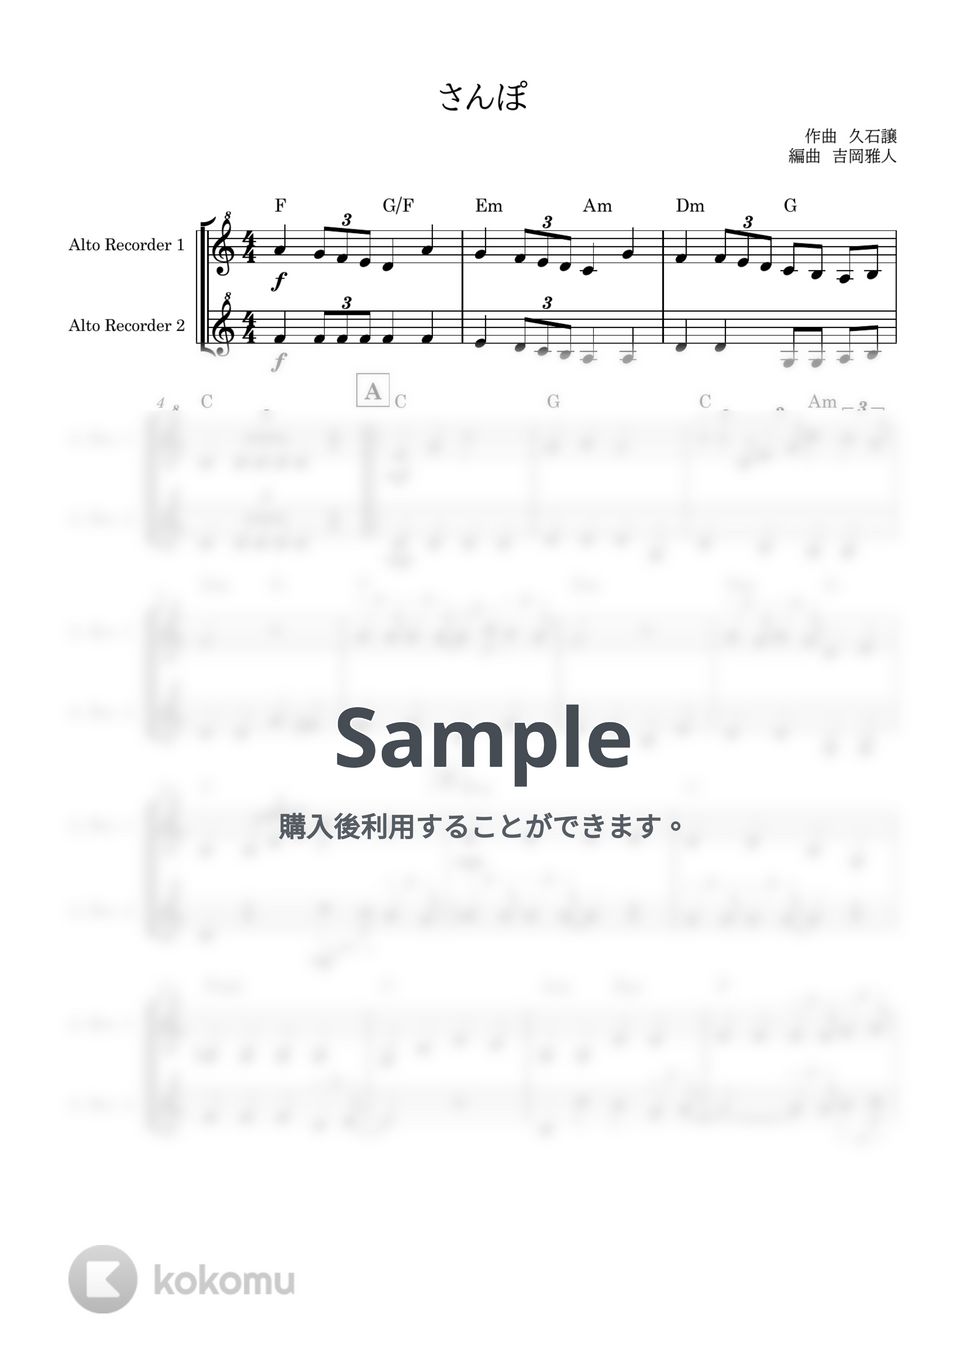 久石譲 - さんぽ (アルトリコーダー２重奏) by 吉岡雅人